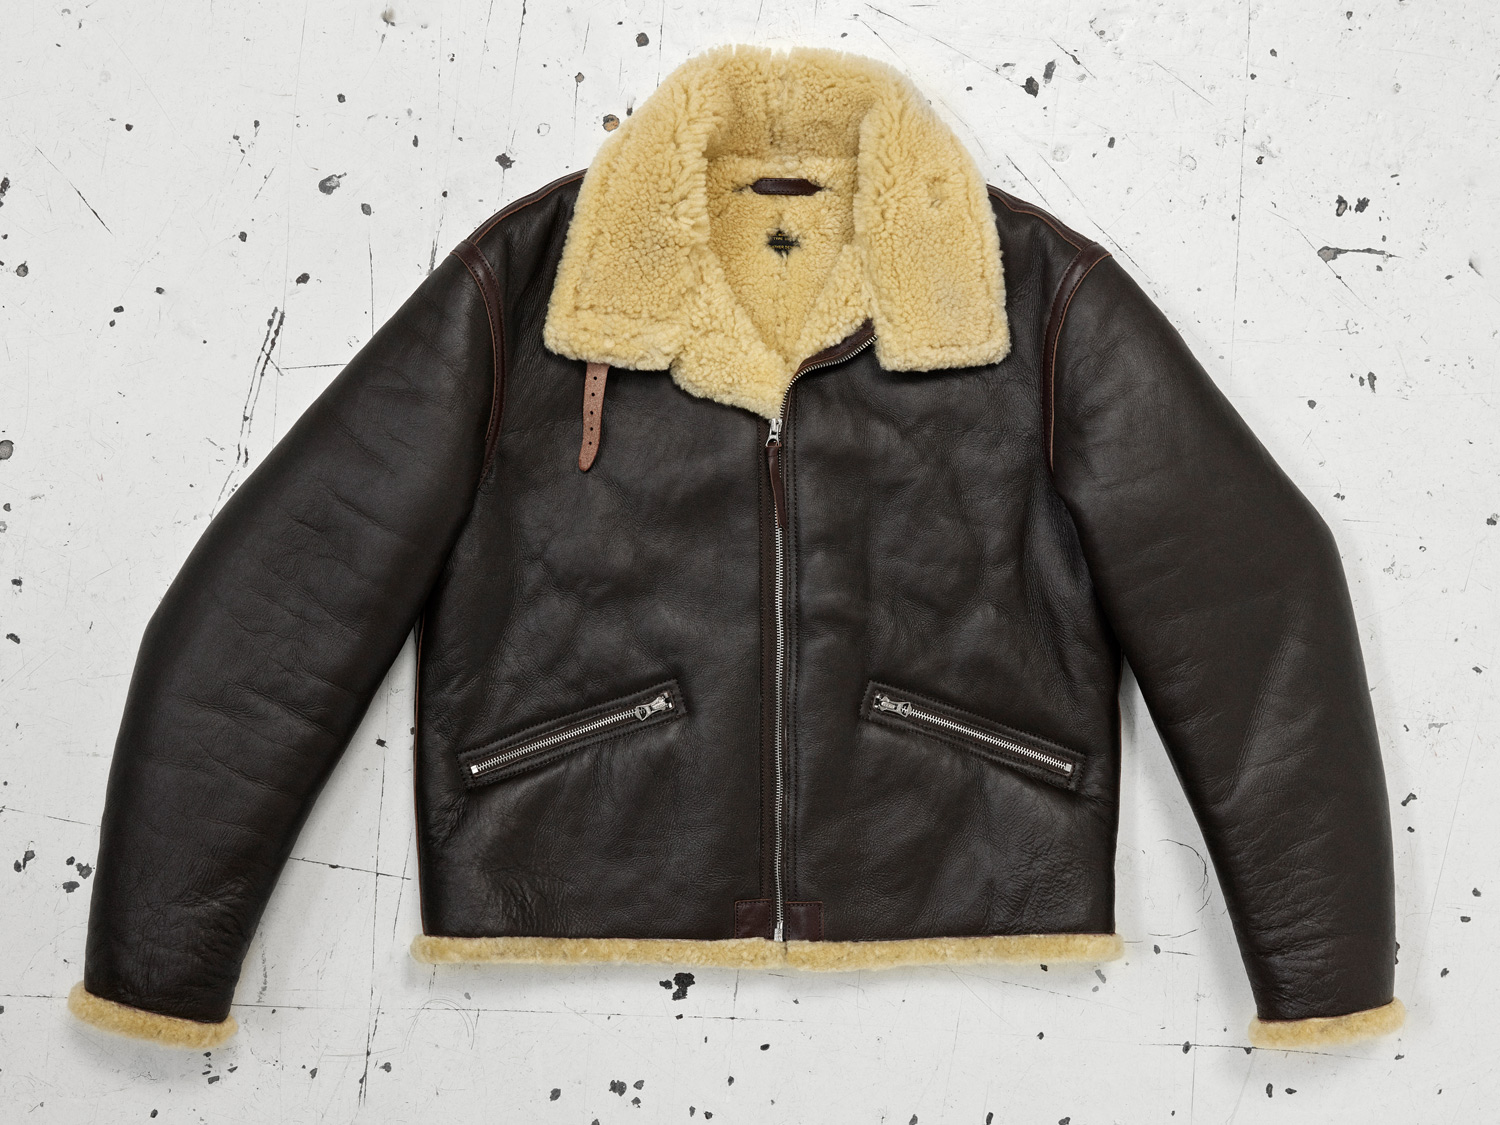 Avi Christmas Announcement | Vintage Leather Jackets Forum